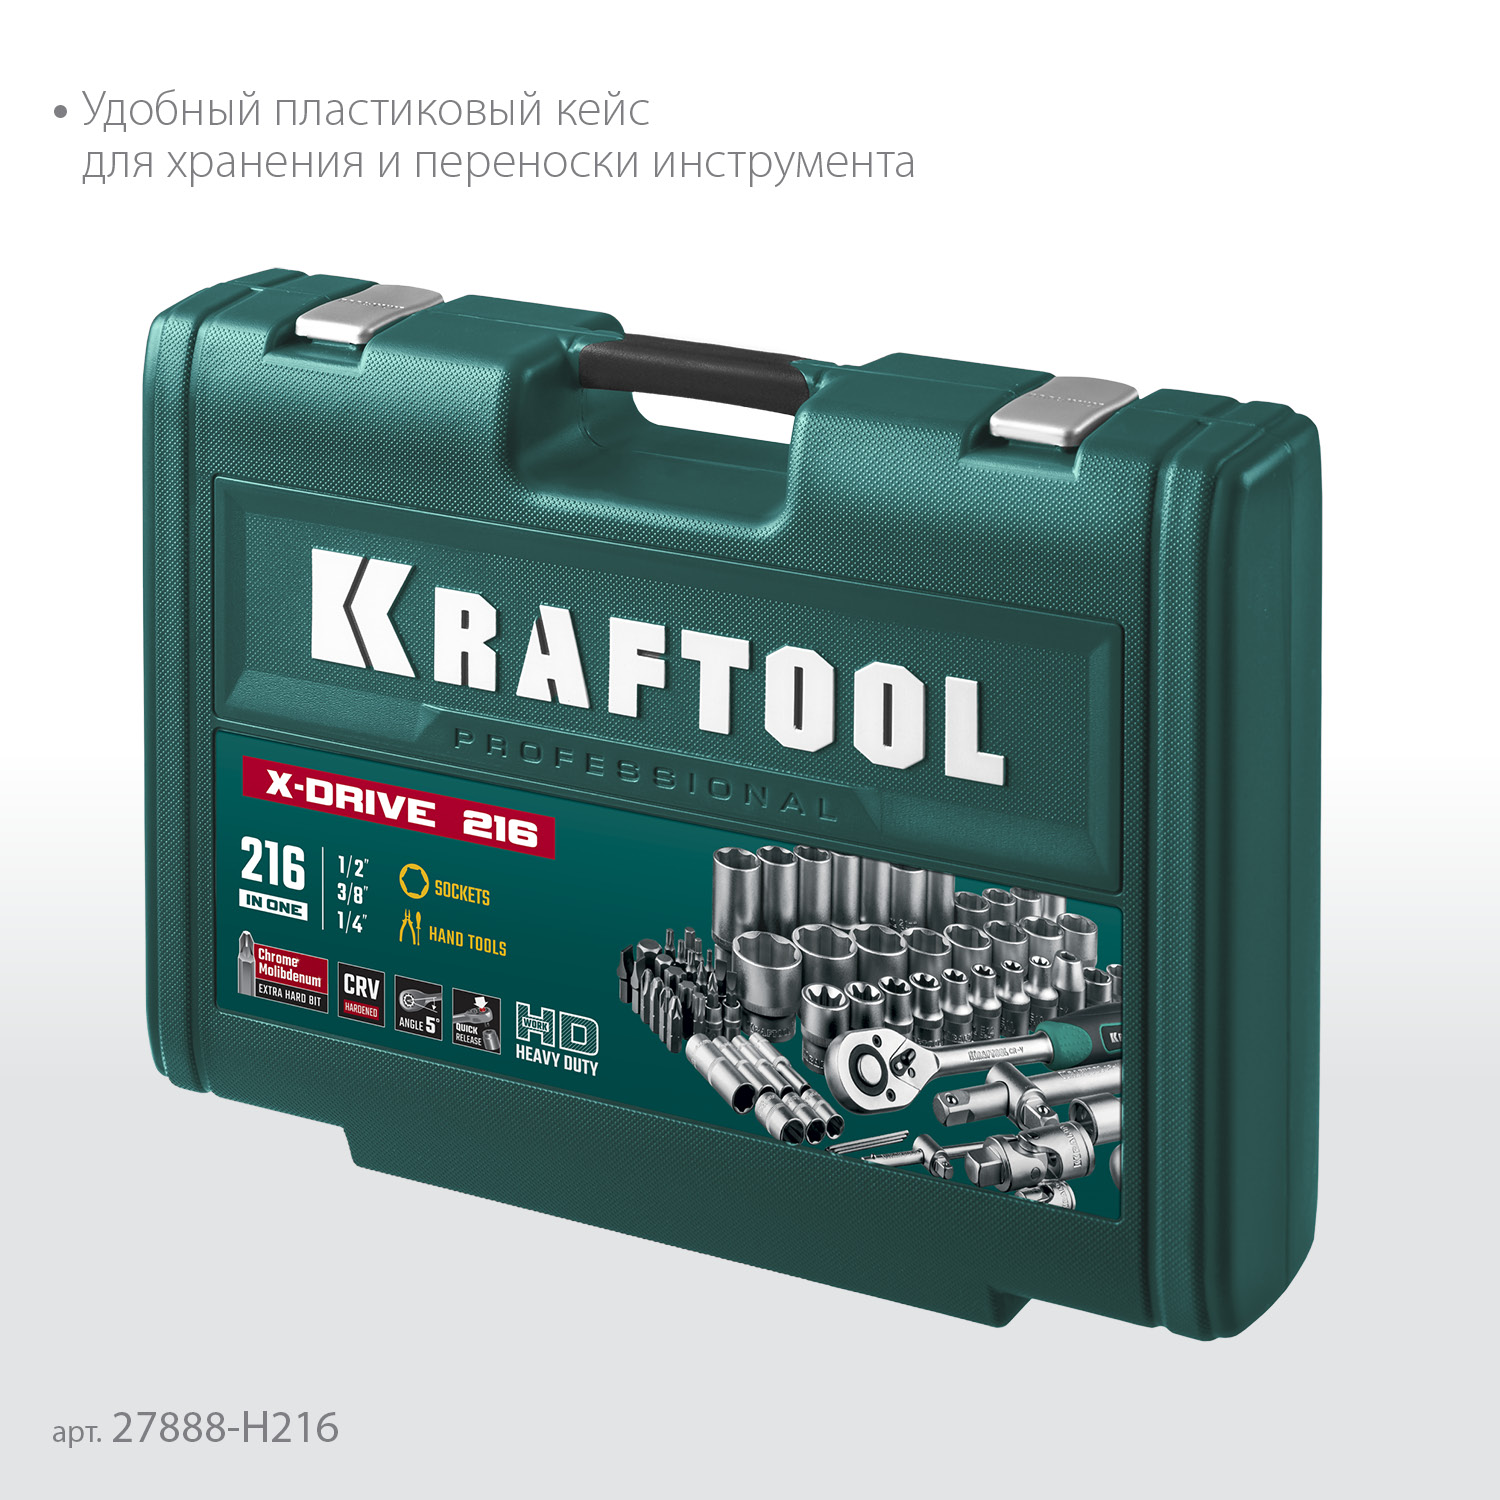 KRAFTOOL X Drive, 216 предм., (1/2″+3/8″+1/4″), универсальный набор инструмента (27888-H216)